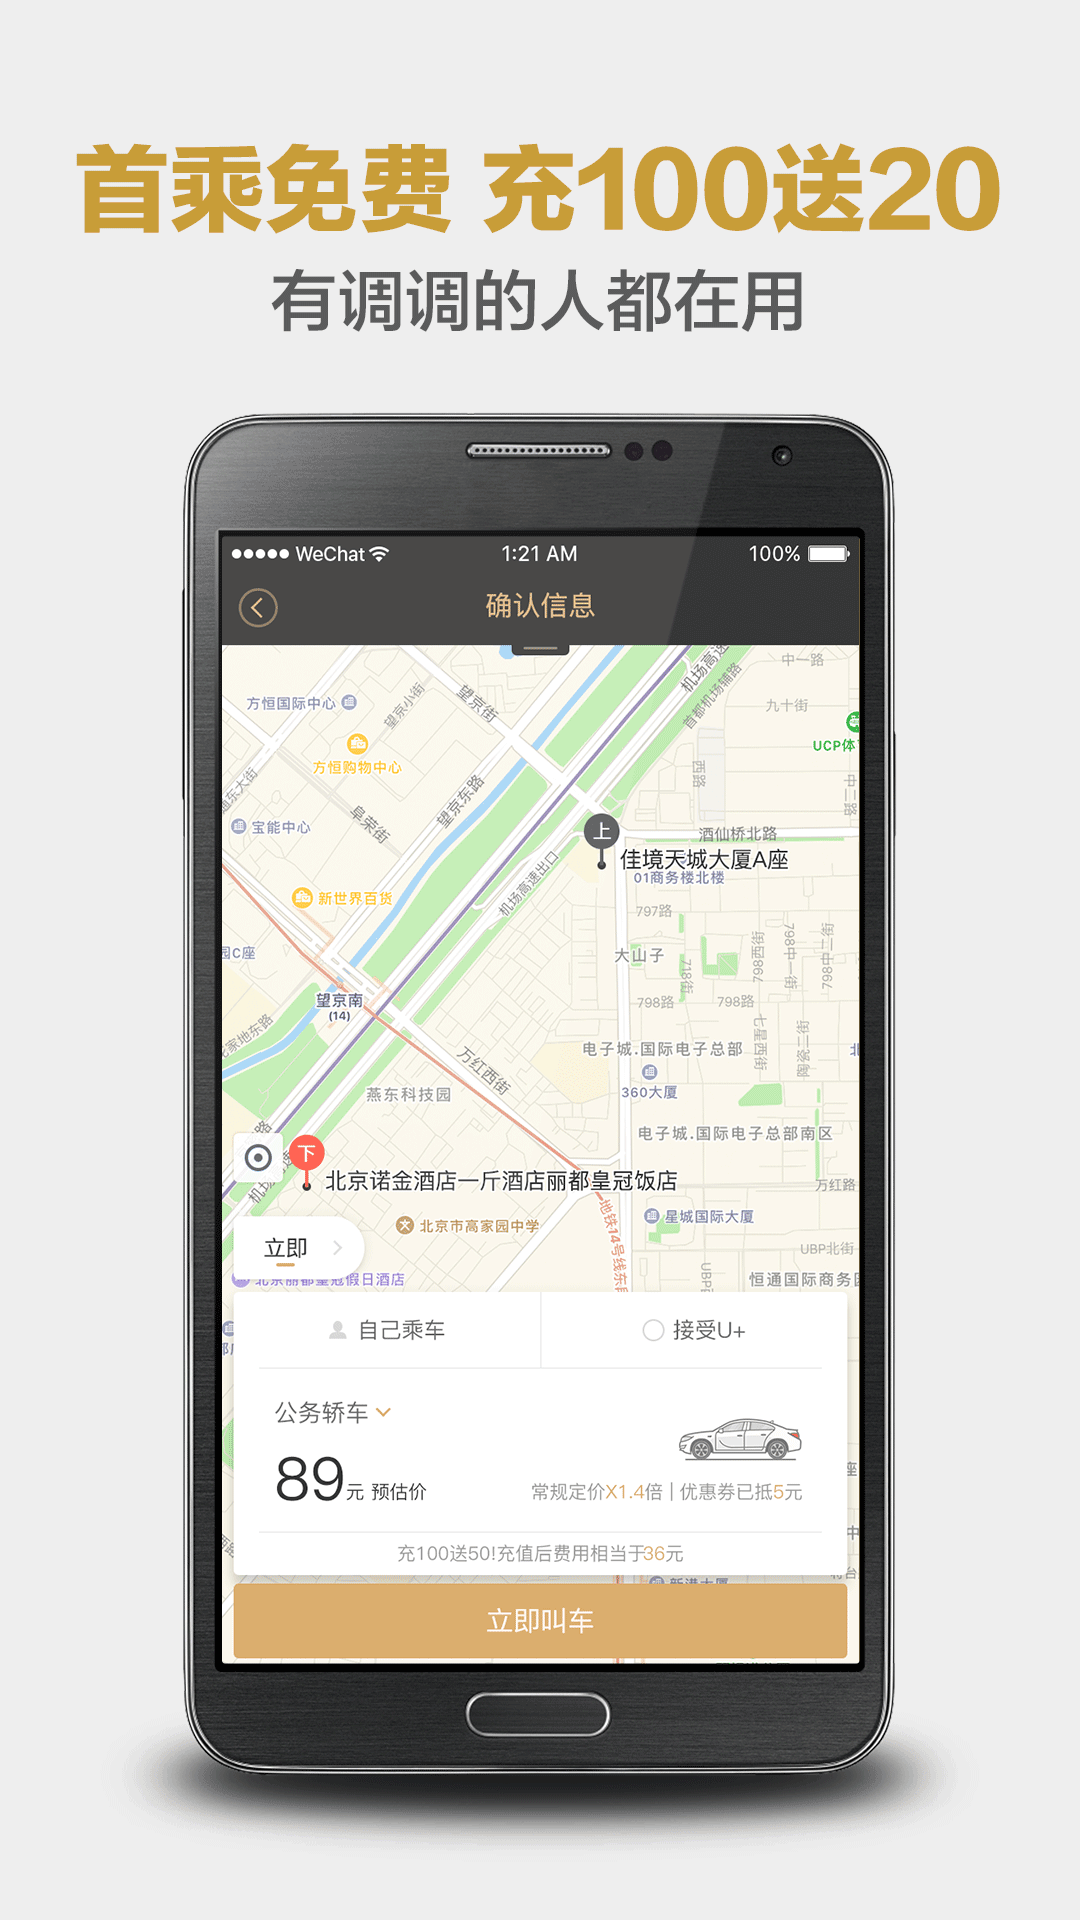 神州专车app下载功能